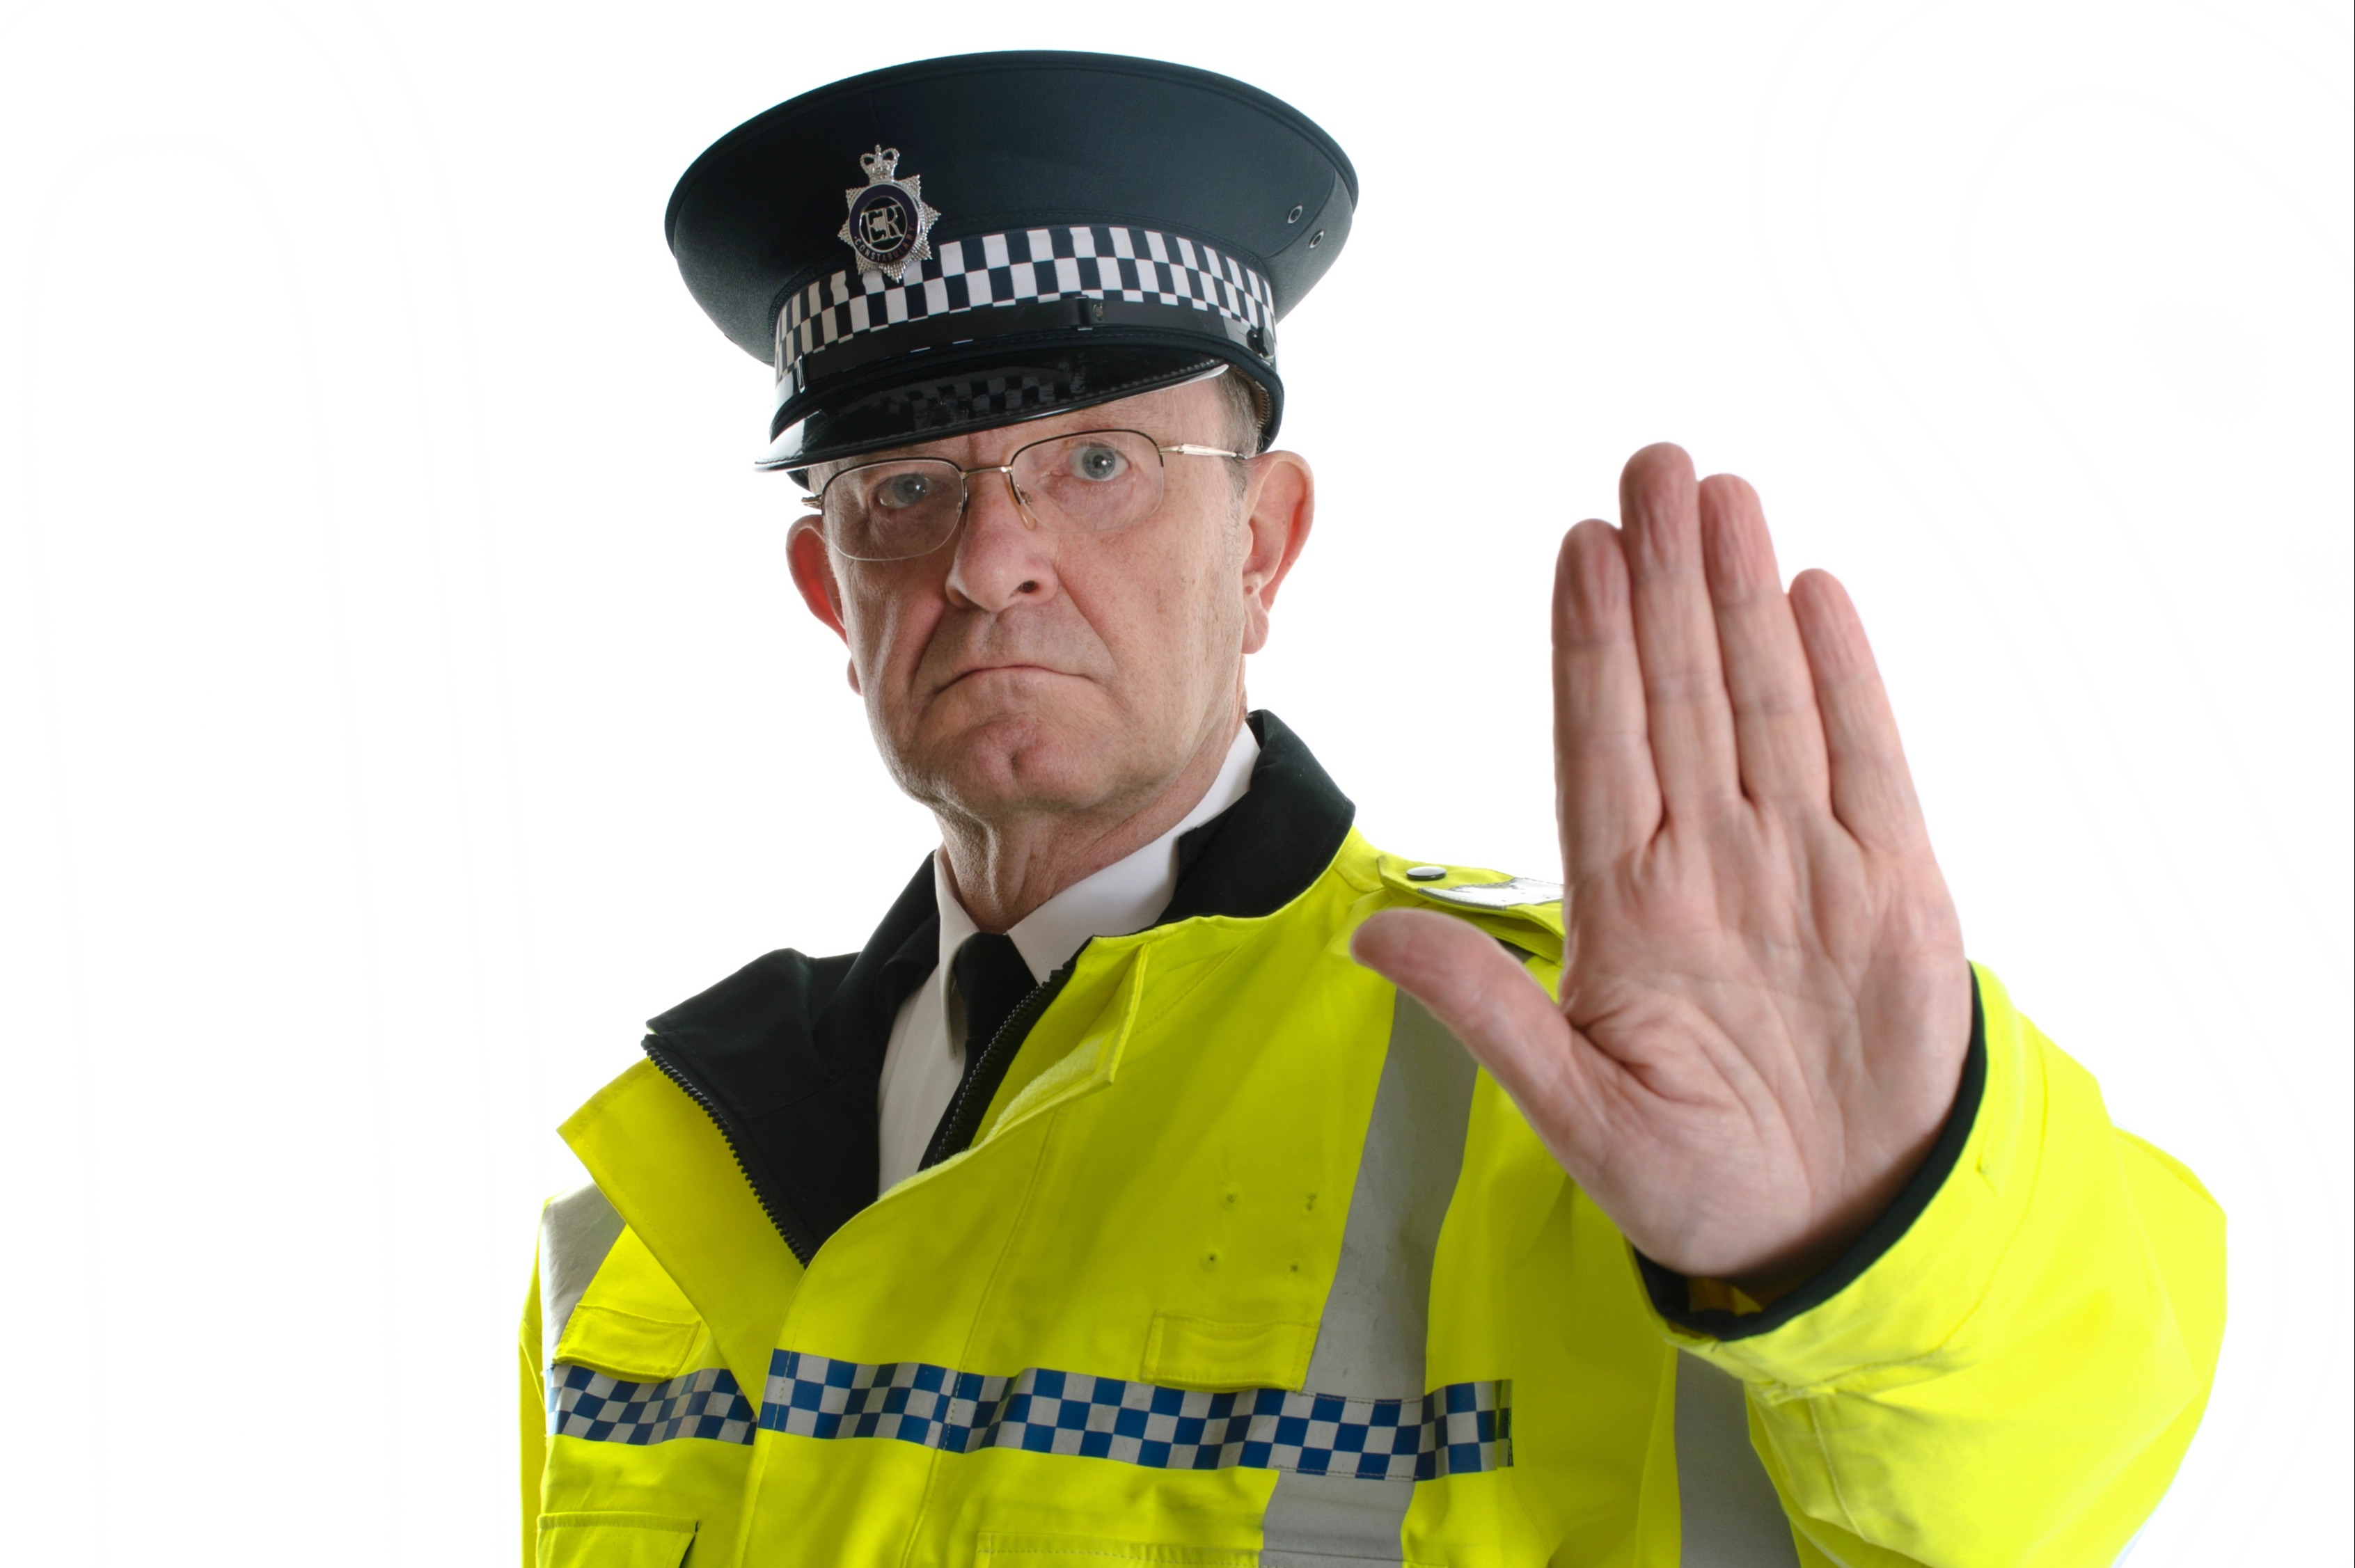 Los policías deben utilizar términos neutros en lugar de llamar a la gente señor o señora